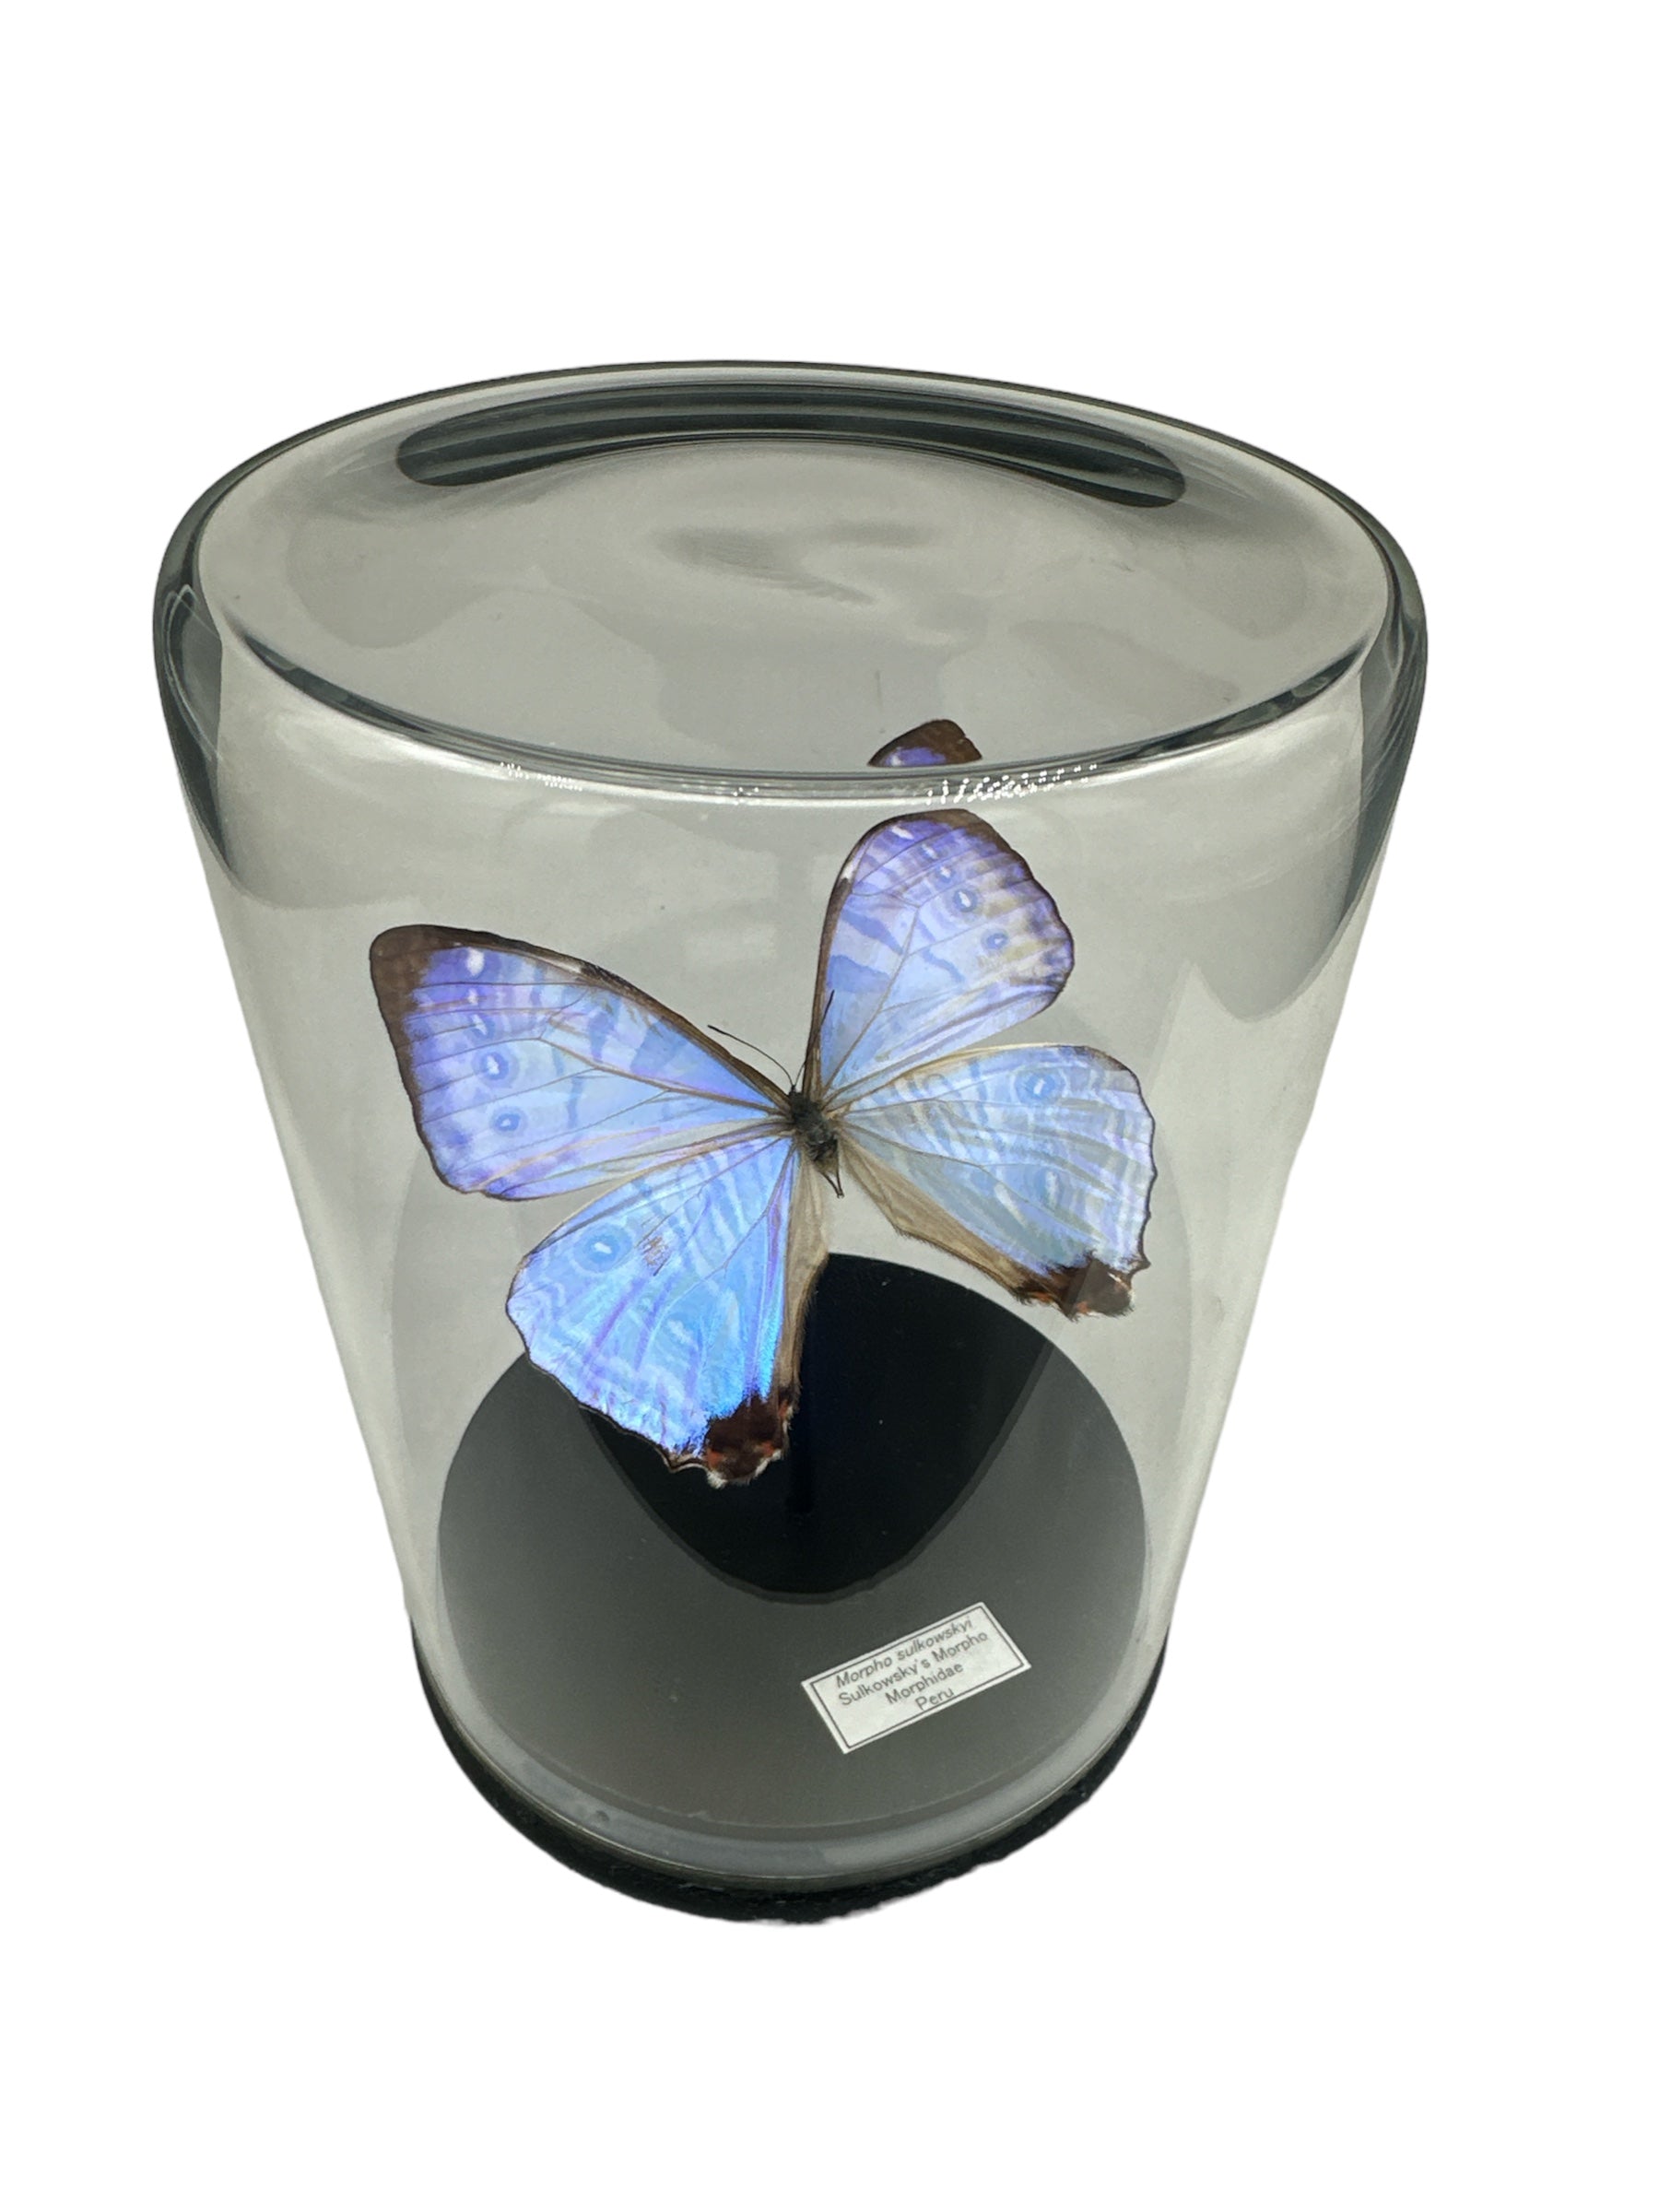 Sulkowsky's Morpho Butterfly (Morpho sulkowskyi) - Glass Dome - Large